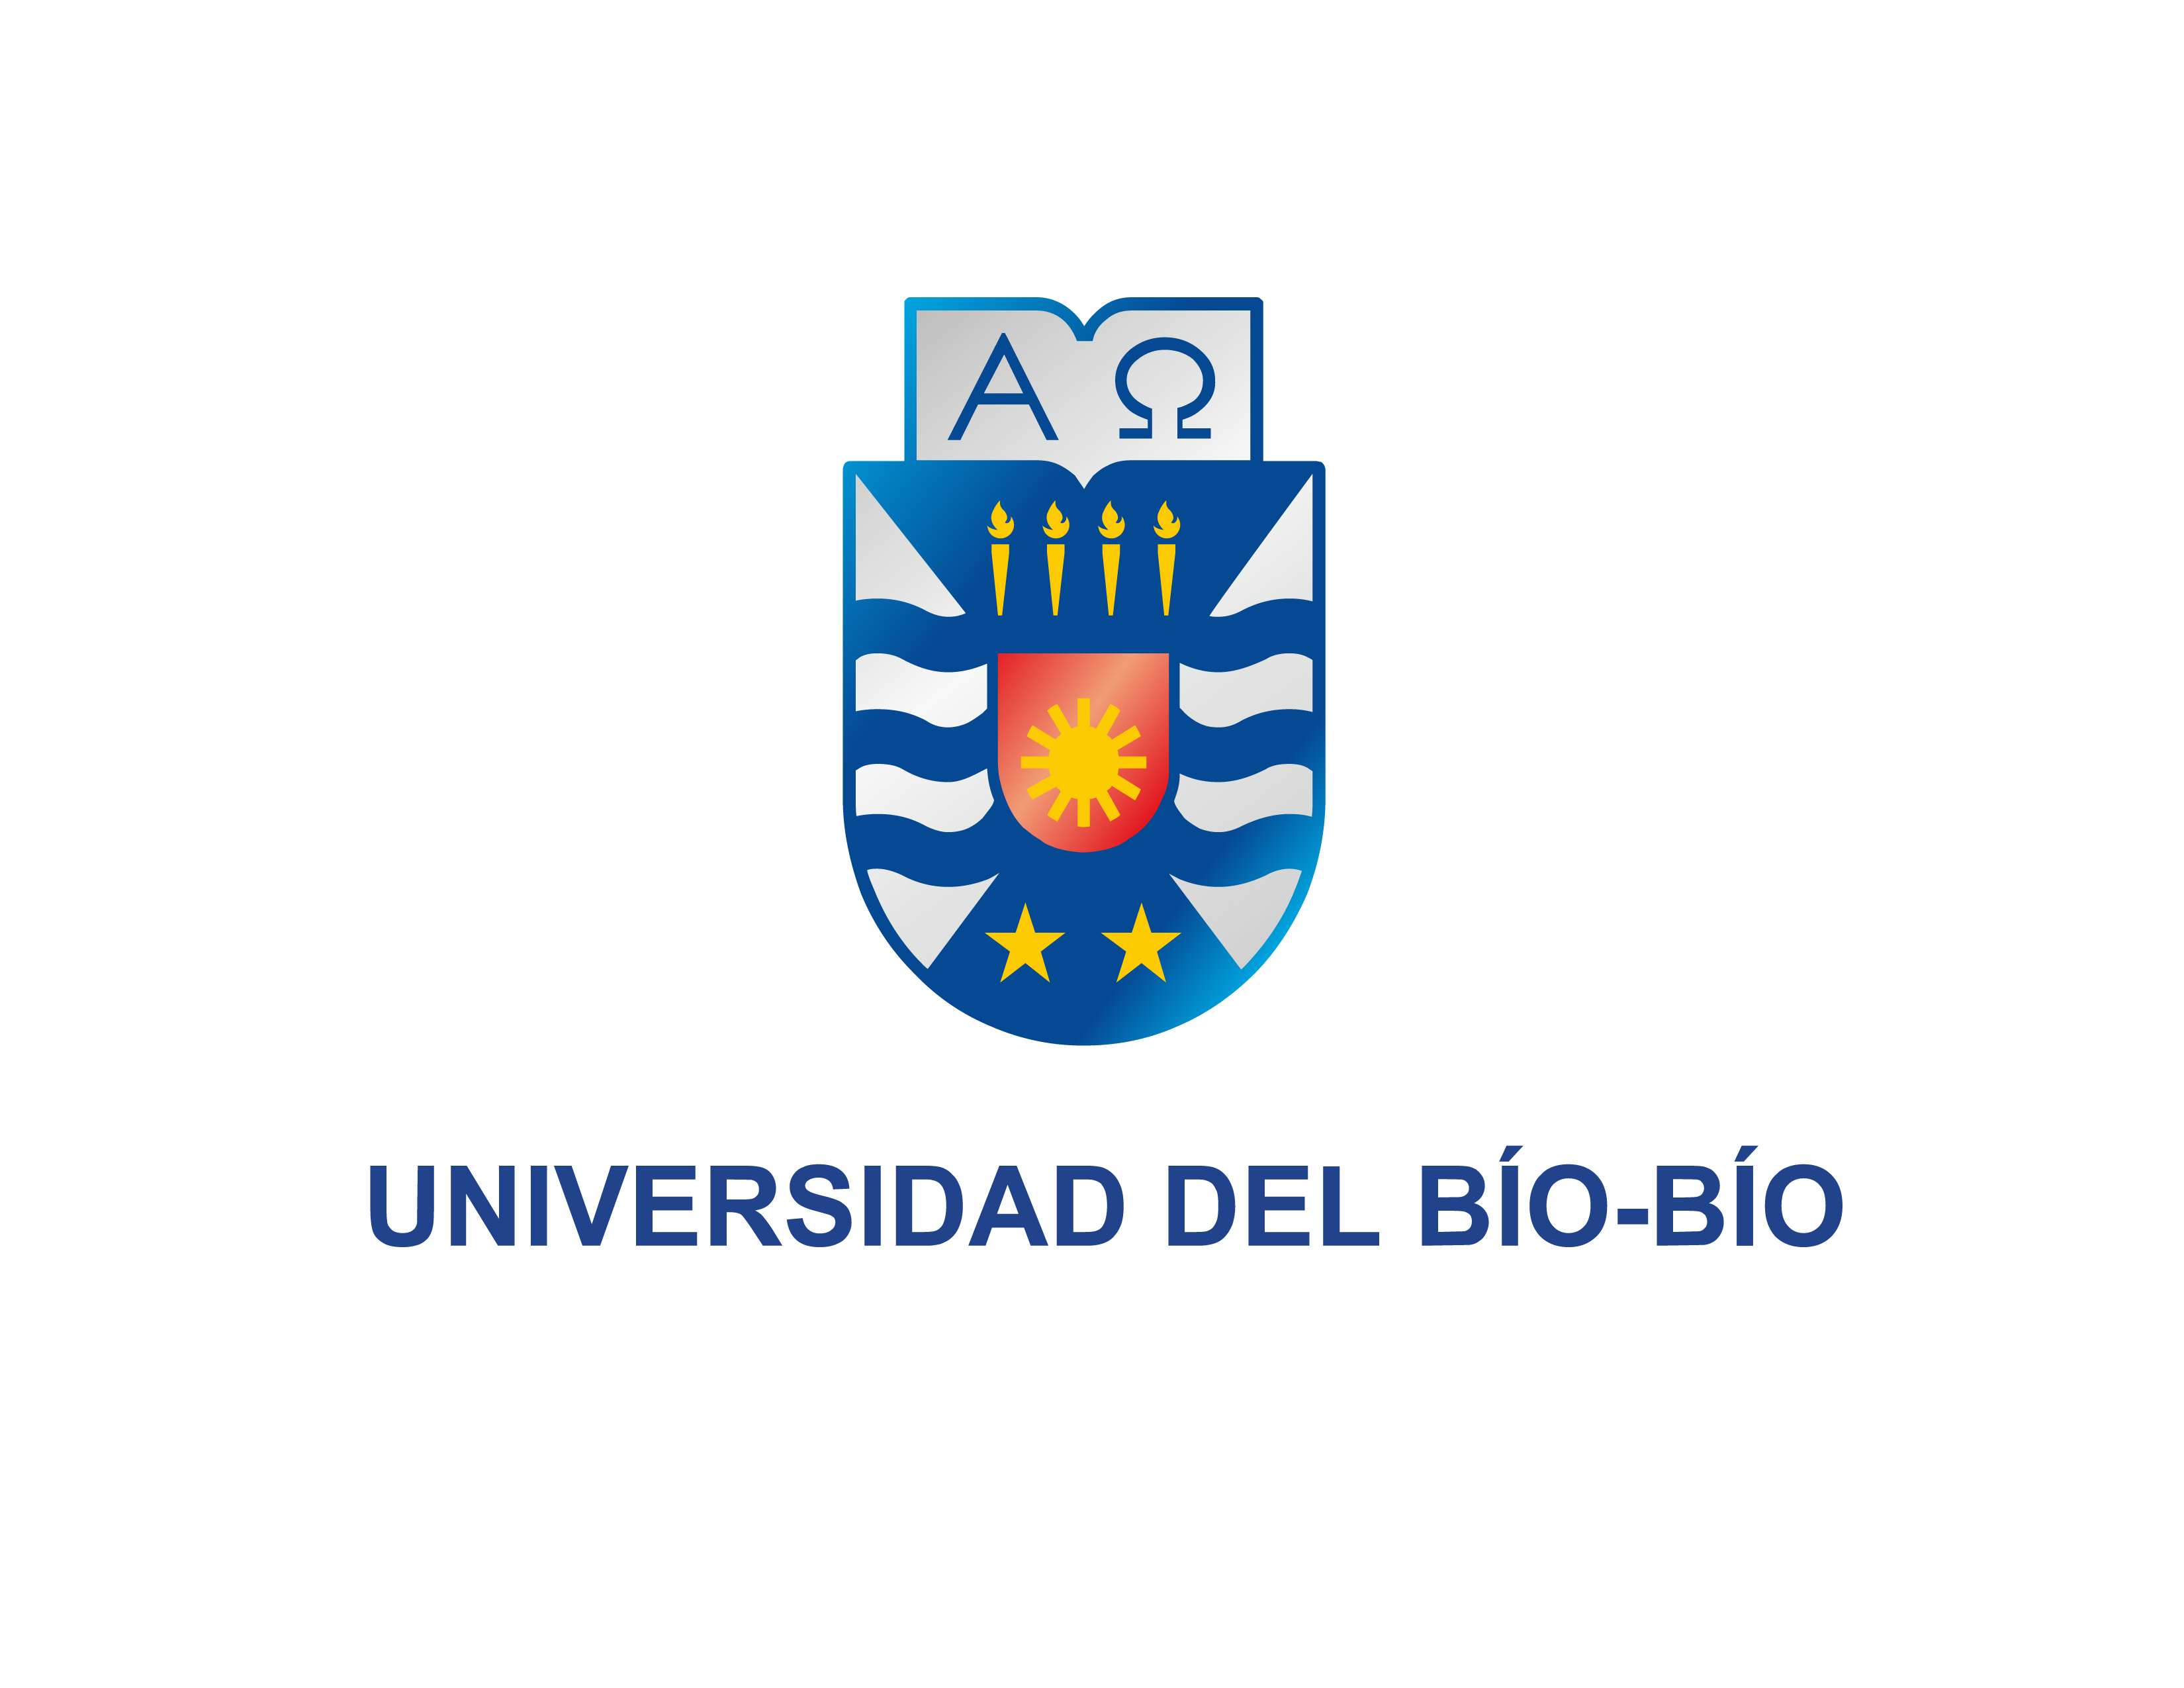 University of Bío-Bío